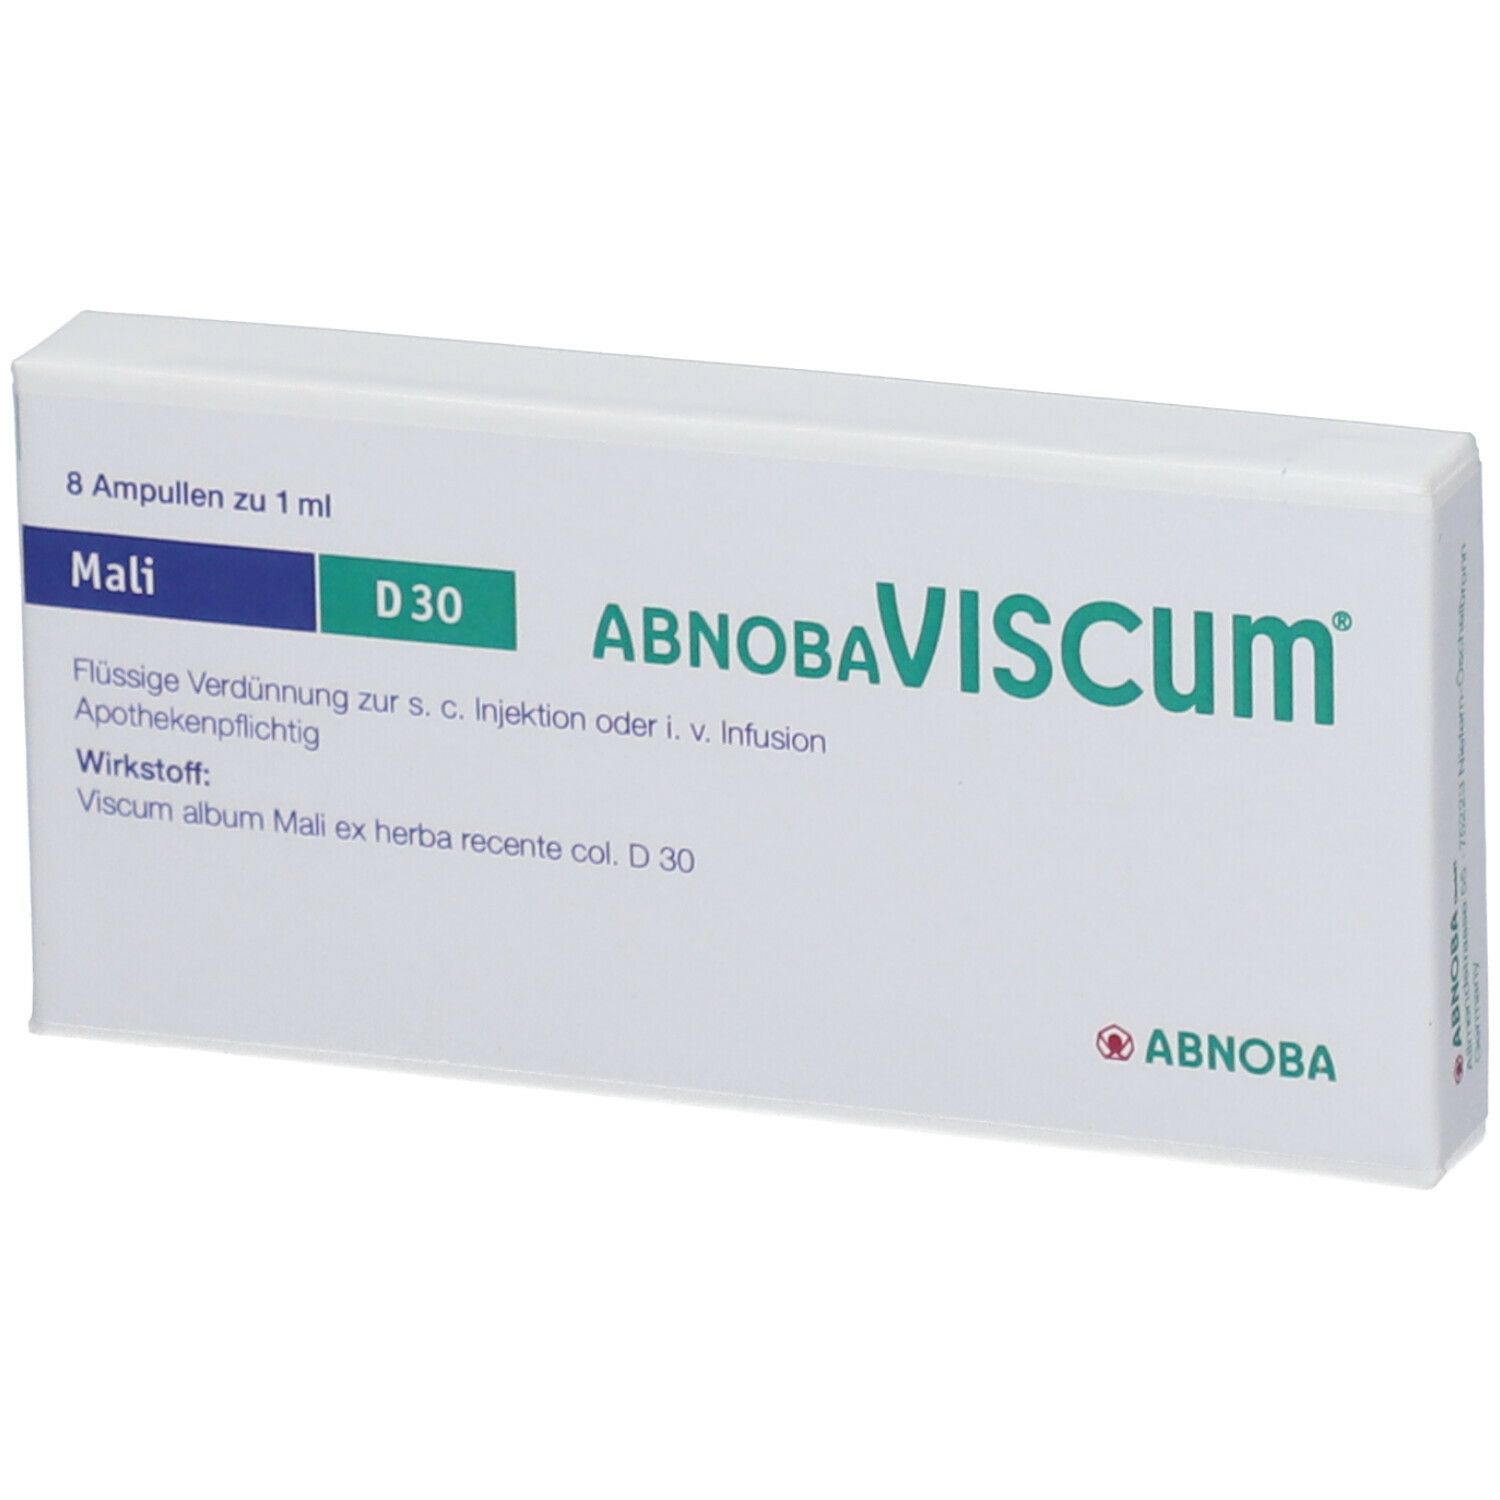 AbnobaVISCUM® Mali D30 Ampullen